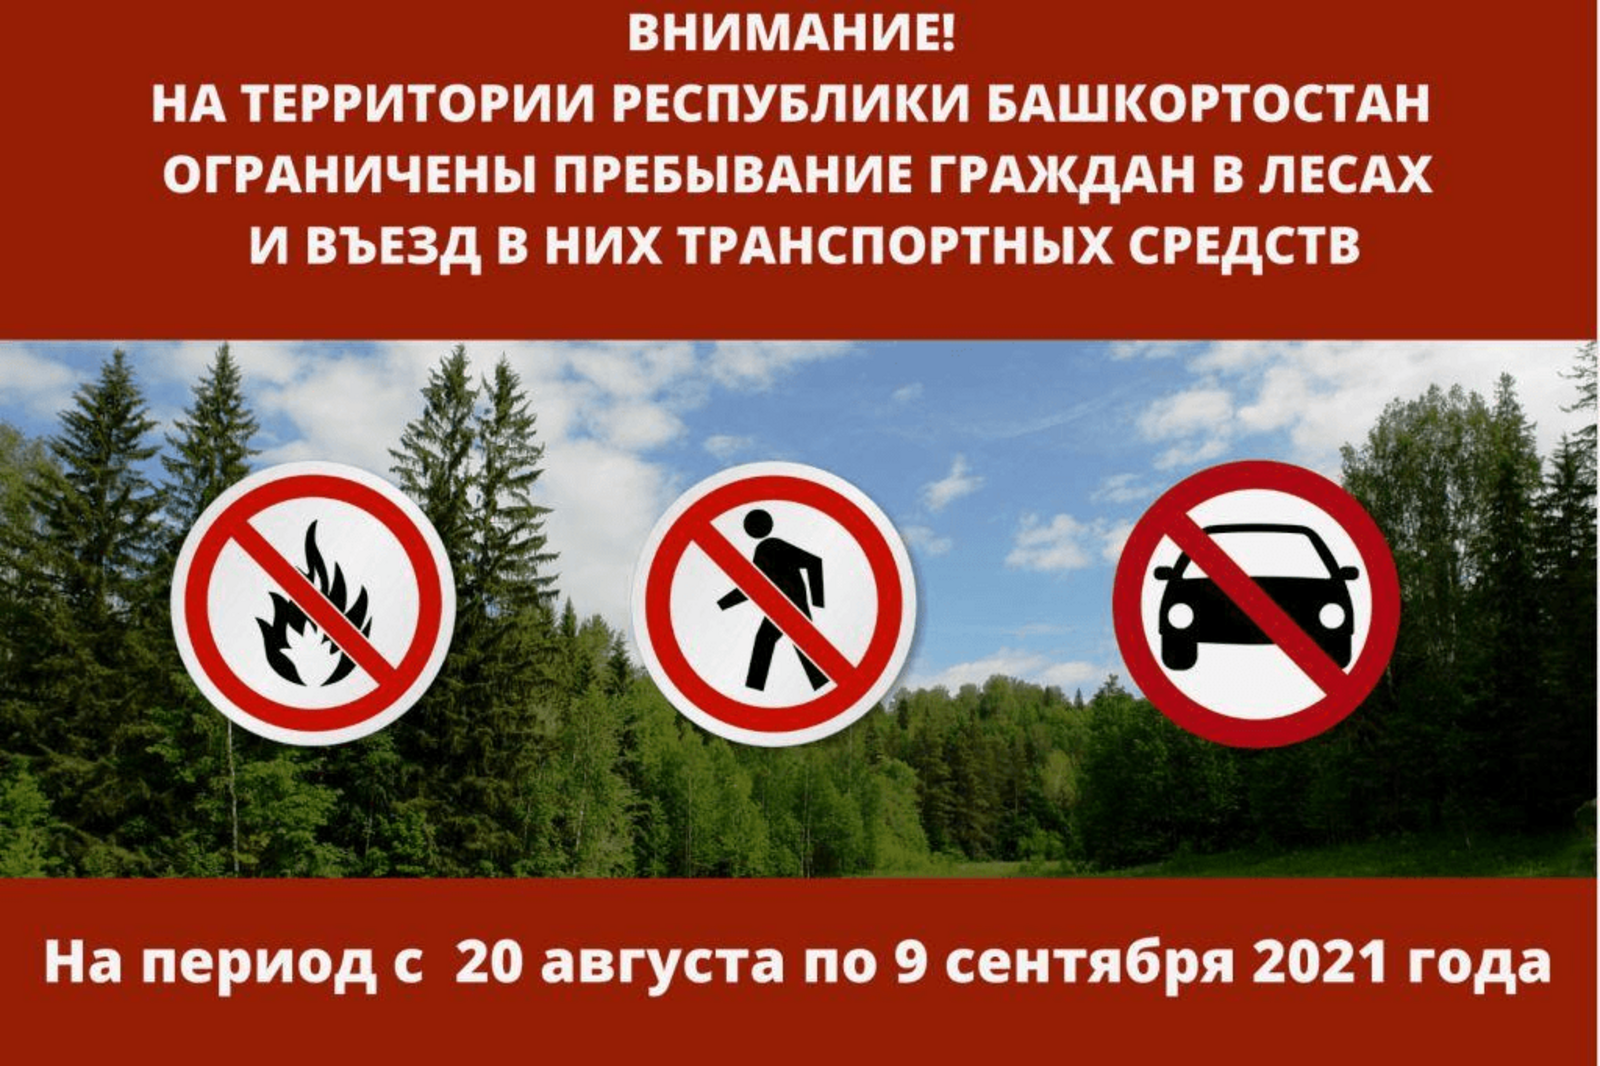 Пребывание граждан в лесах Башкортостана ограничено до 9 сентября